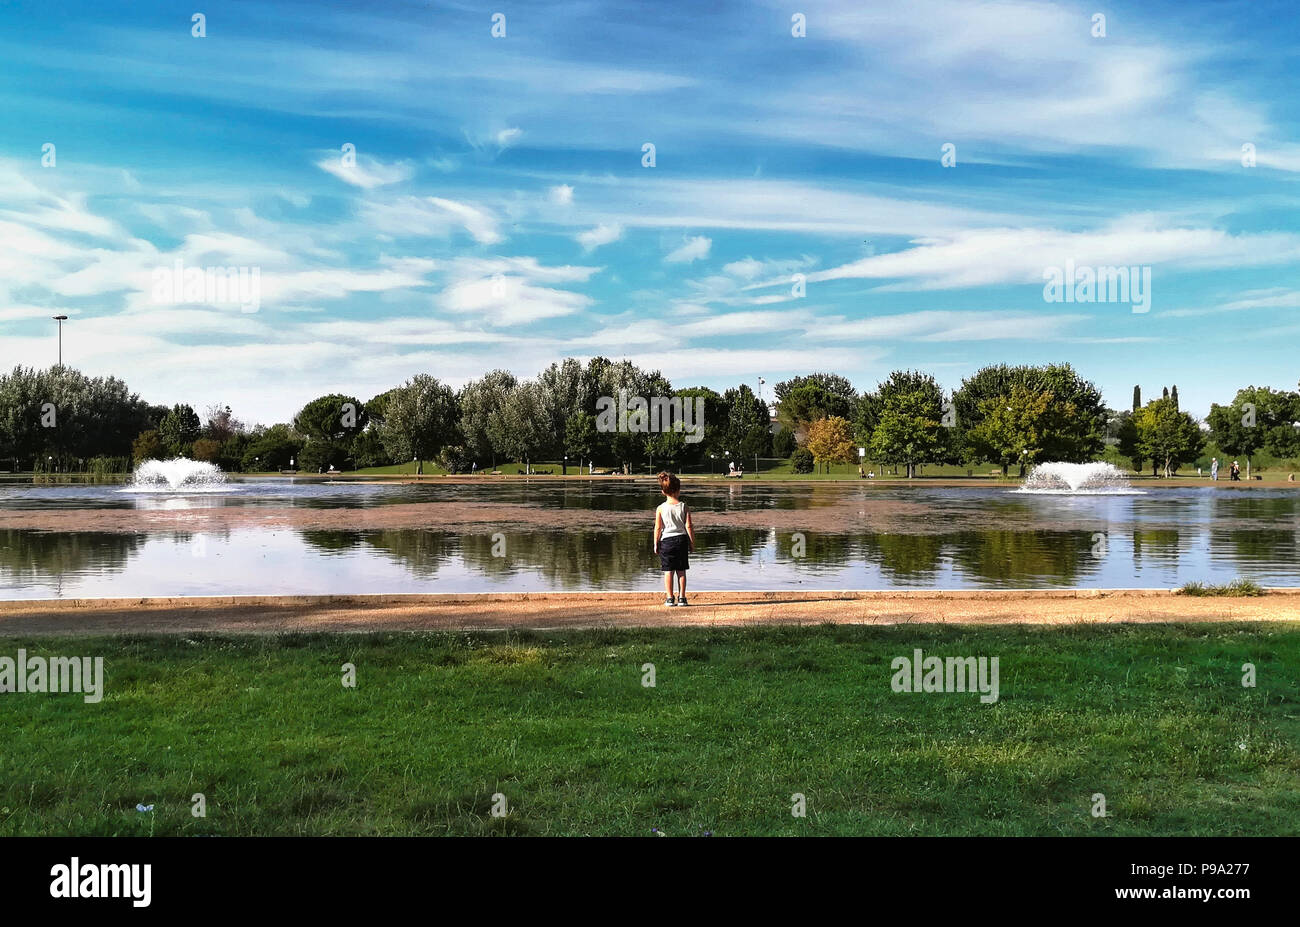 Vista trasera del niño mirando al tranquilo lago de escenas urbanas en Green Park en temporada de primavera Foto de stock